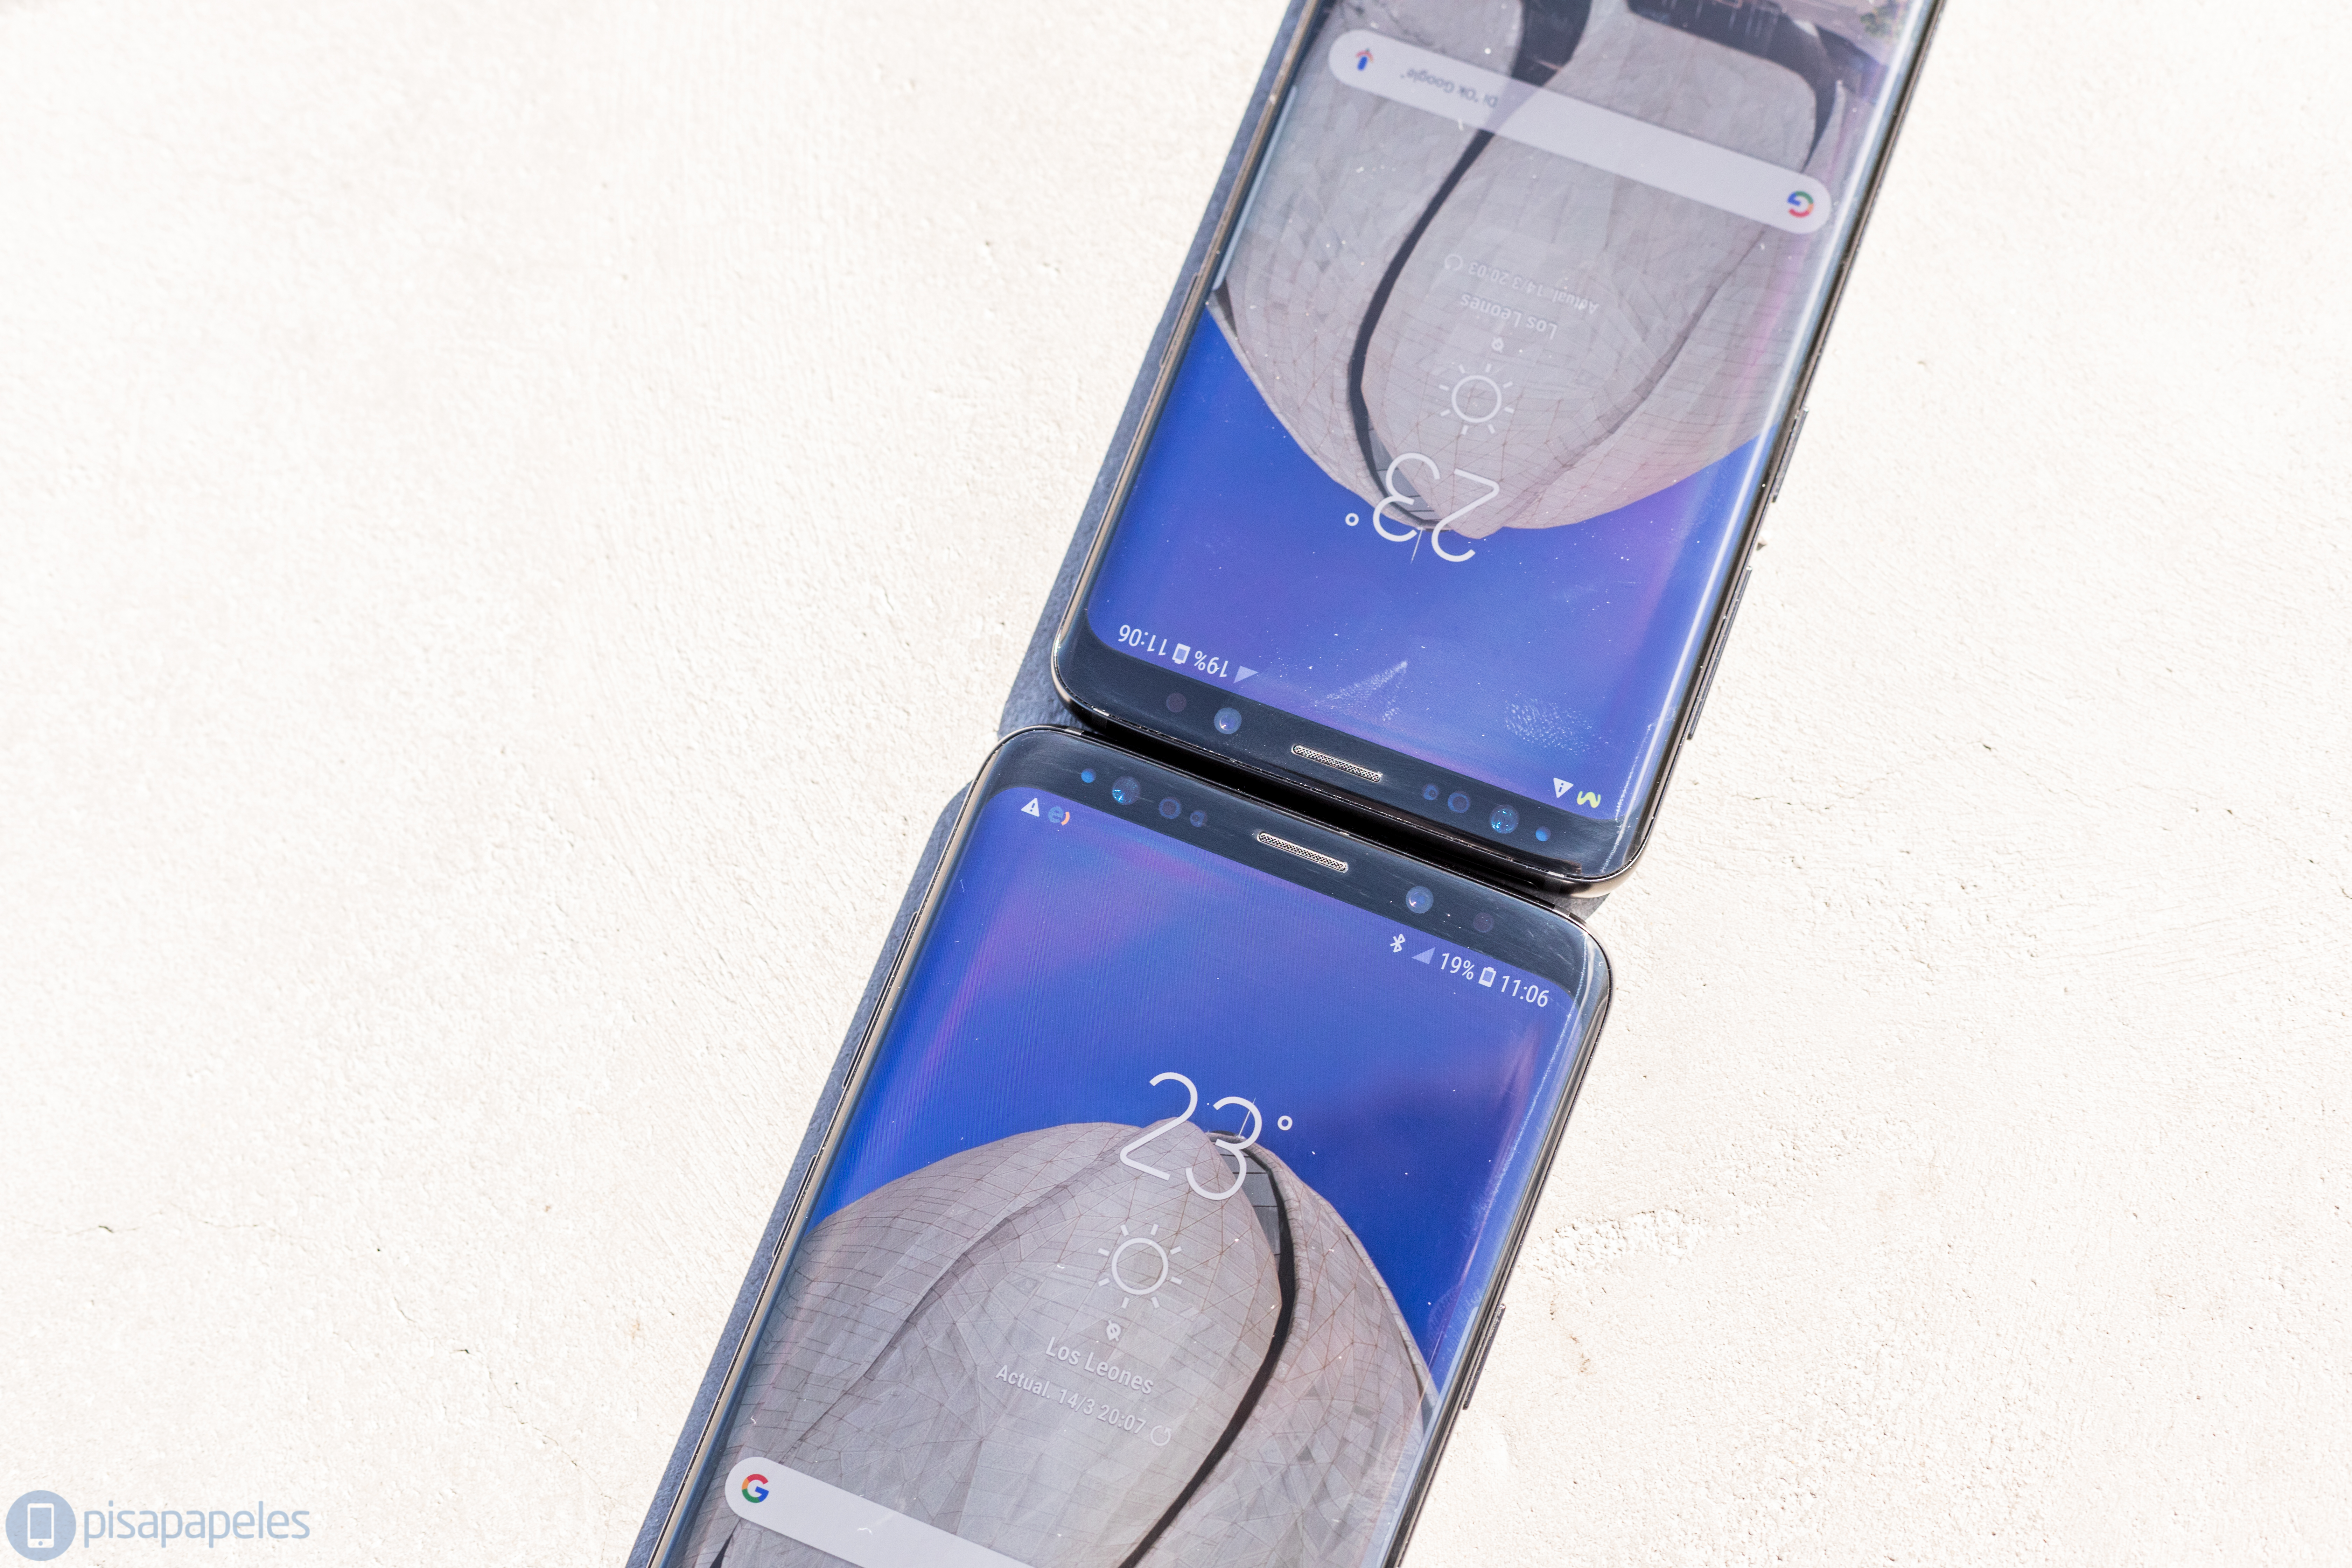 Samsung đánh giá Galaxy S9 và Galaxy S9 + 22 "chiều rộng =" 6720 "chiều cao =" 4480